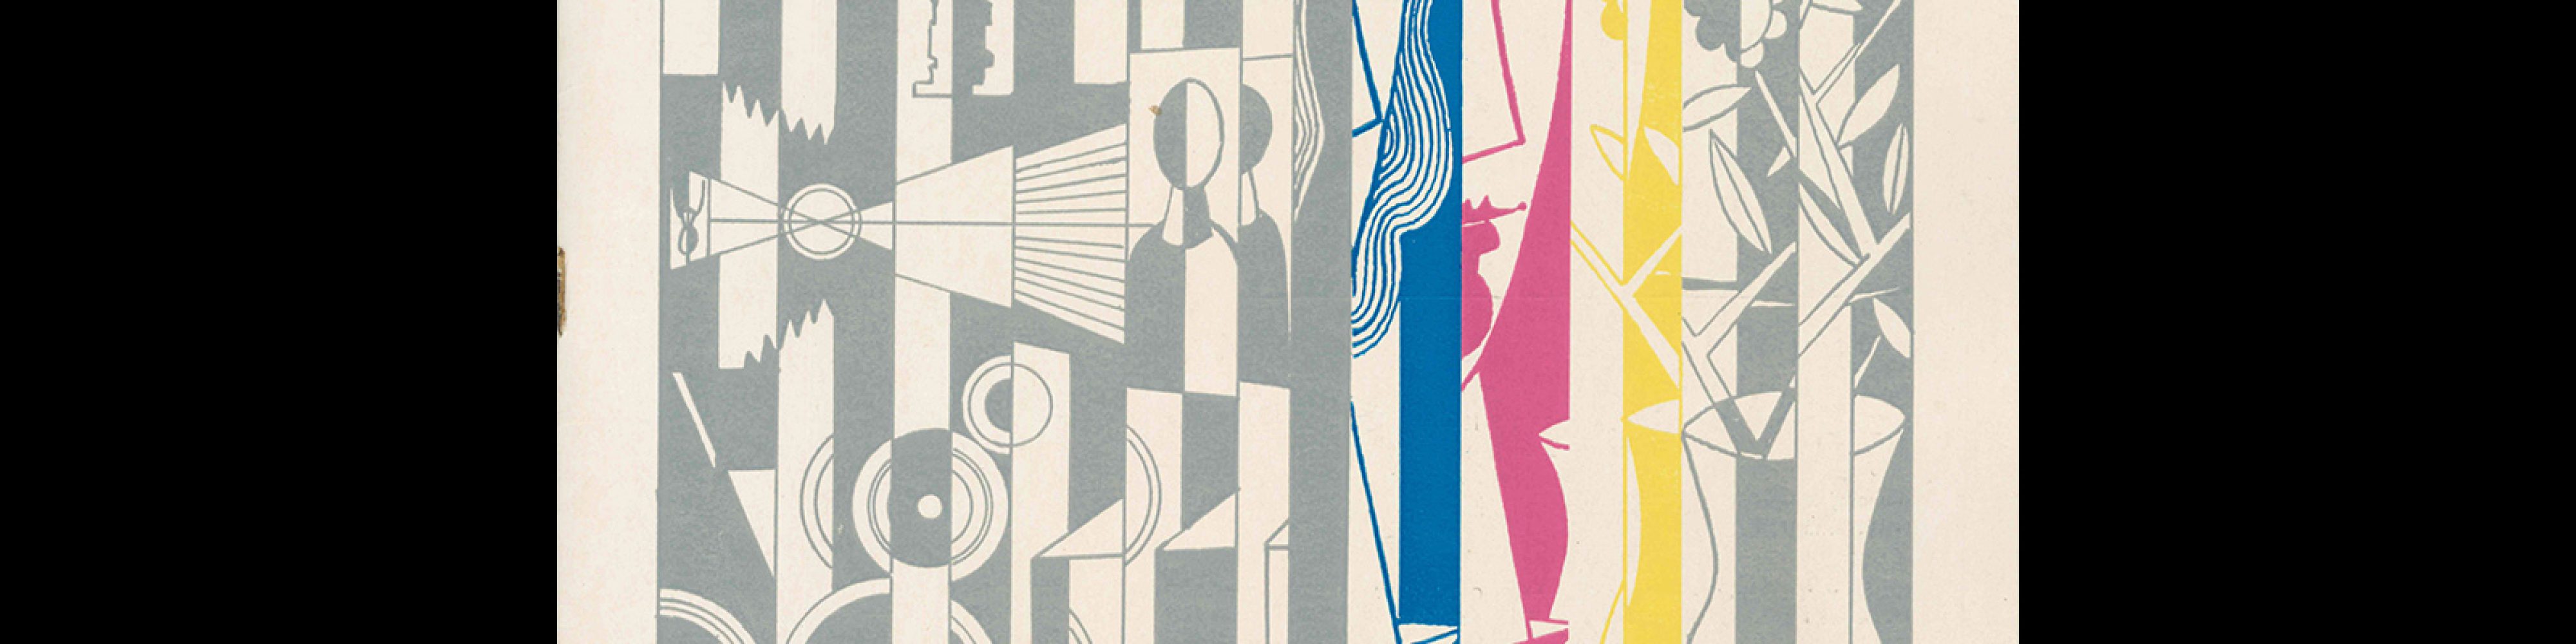 Typografia, ročník 72, 12, 1969. Cover design by Juraj Deák